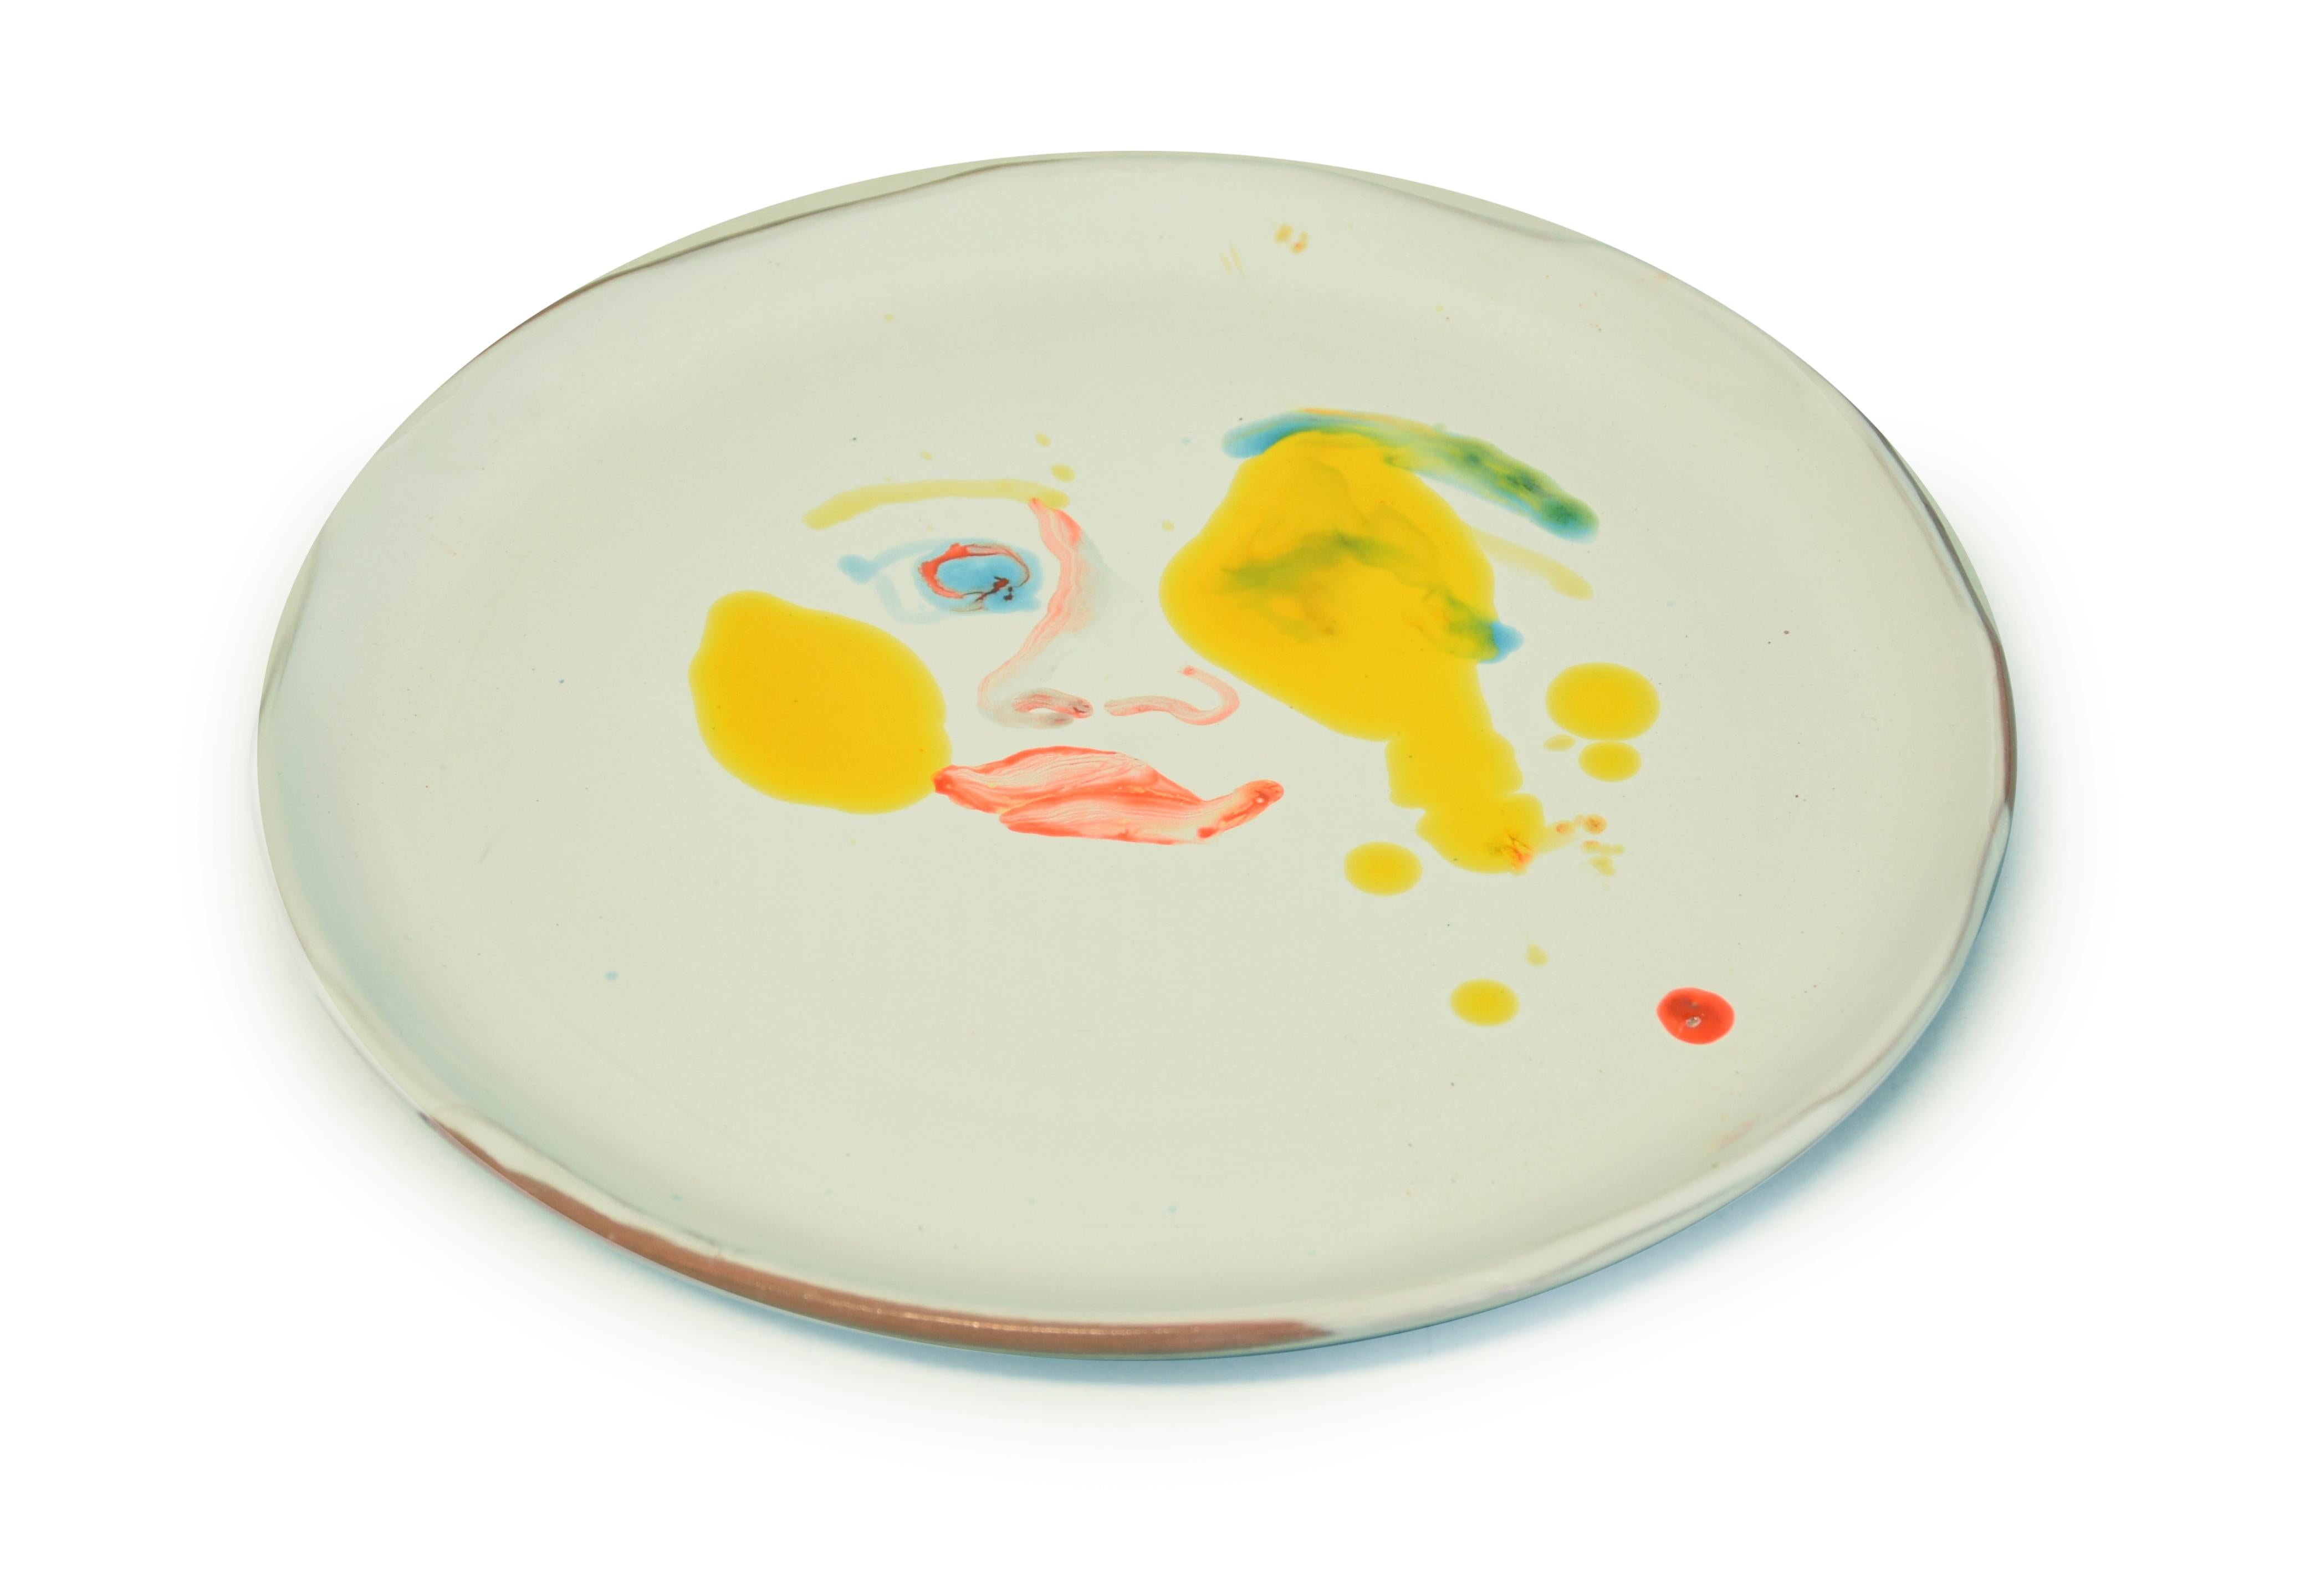 Gelbe Flecken - Original  Handgefertigte flache Keramikschale von A. Kurakina – 2019